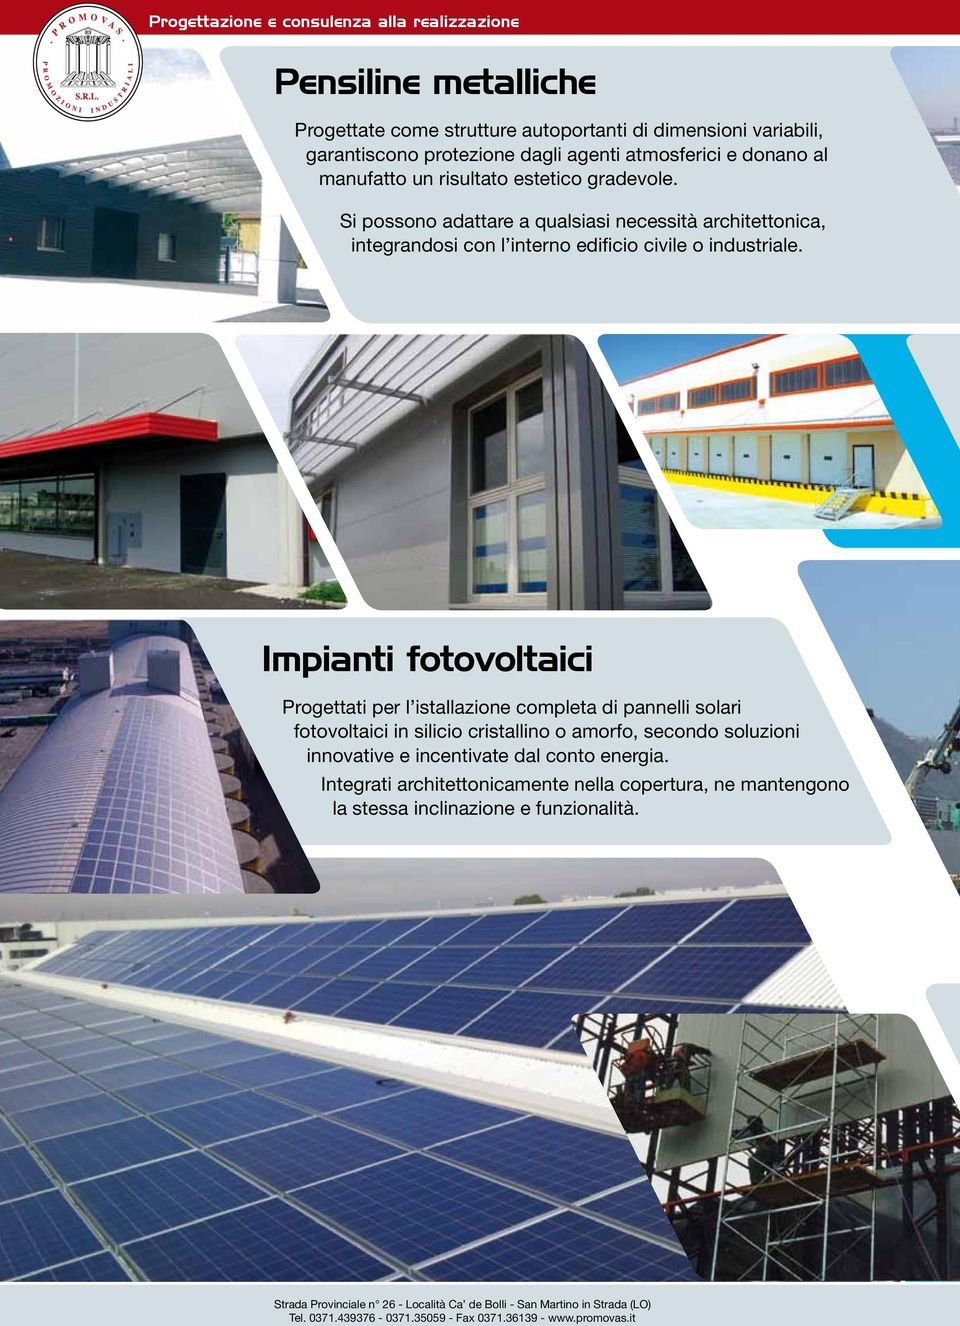 Impianti fotovoltaici Progettati per l istallazione completa di pannelli solari fotovoltaici in silicio cristallino o amorfo, secondo soluzioni innovative e incentivate dal conto energia.